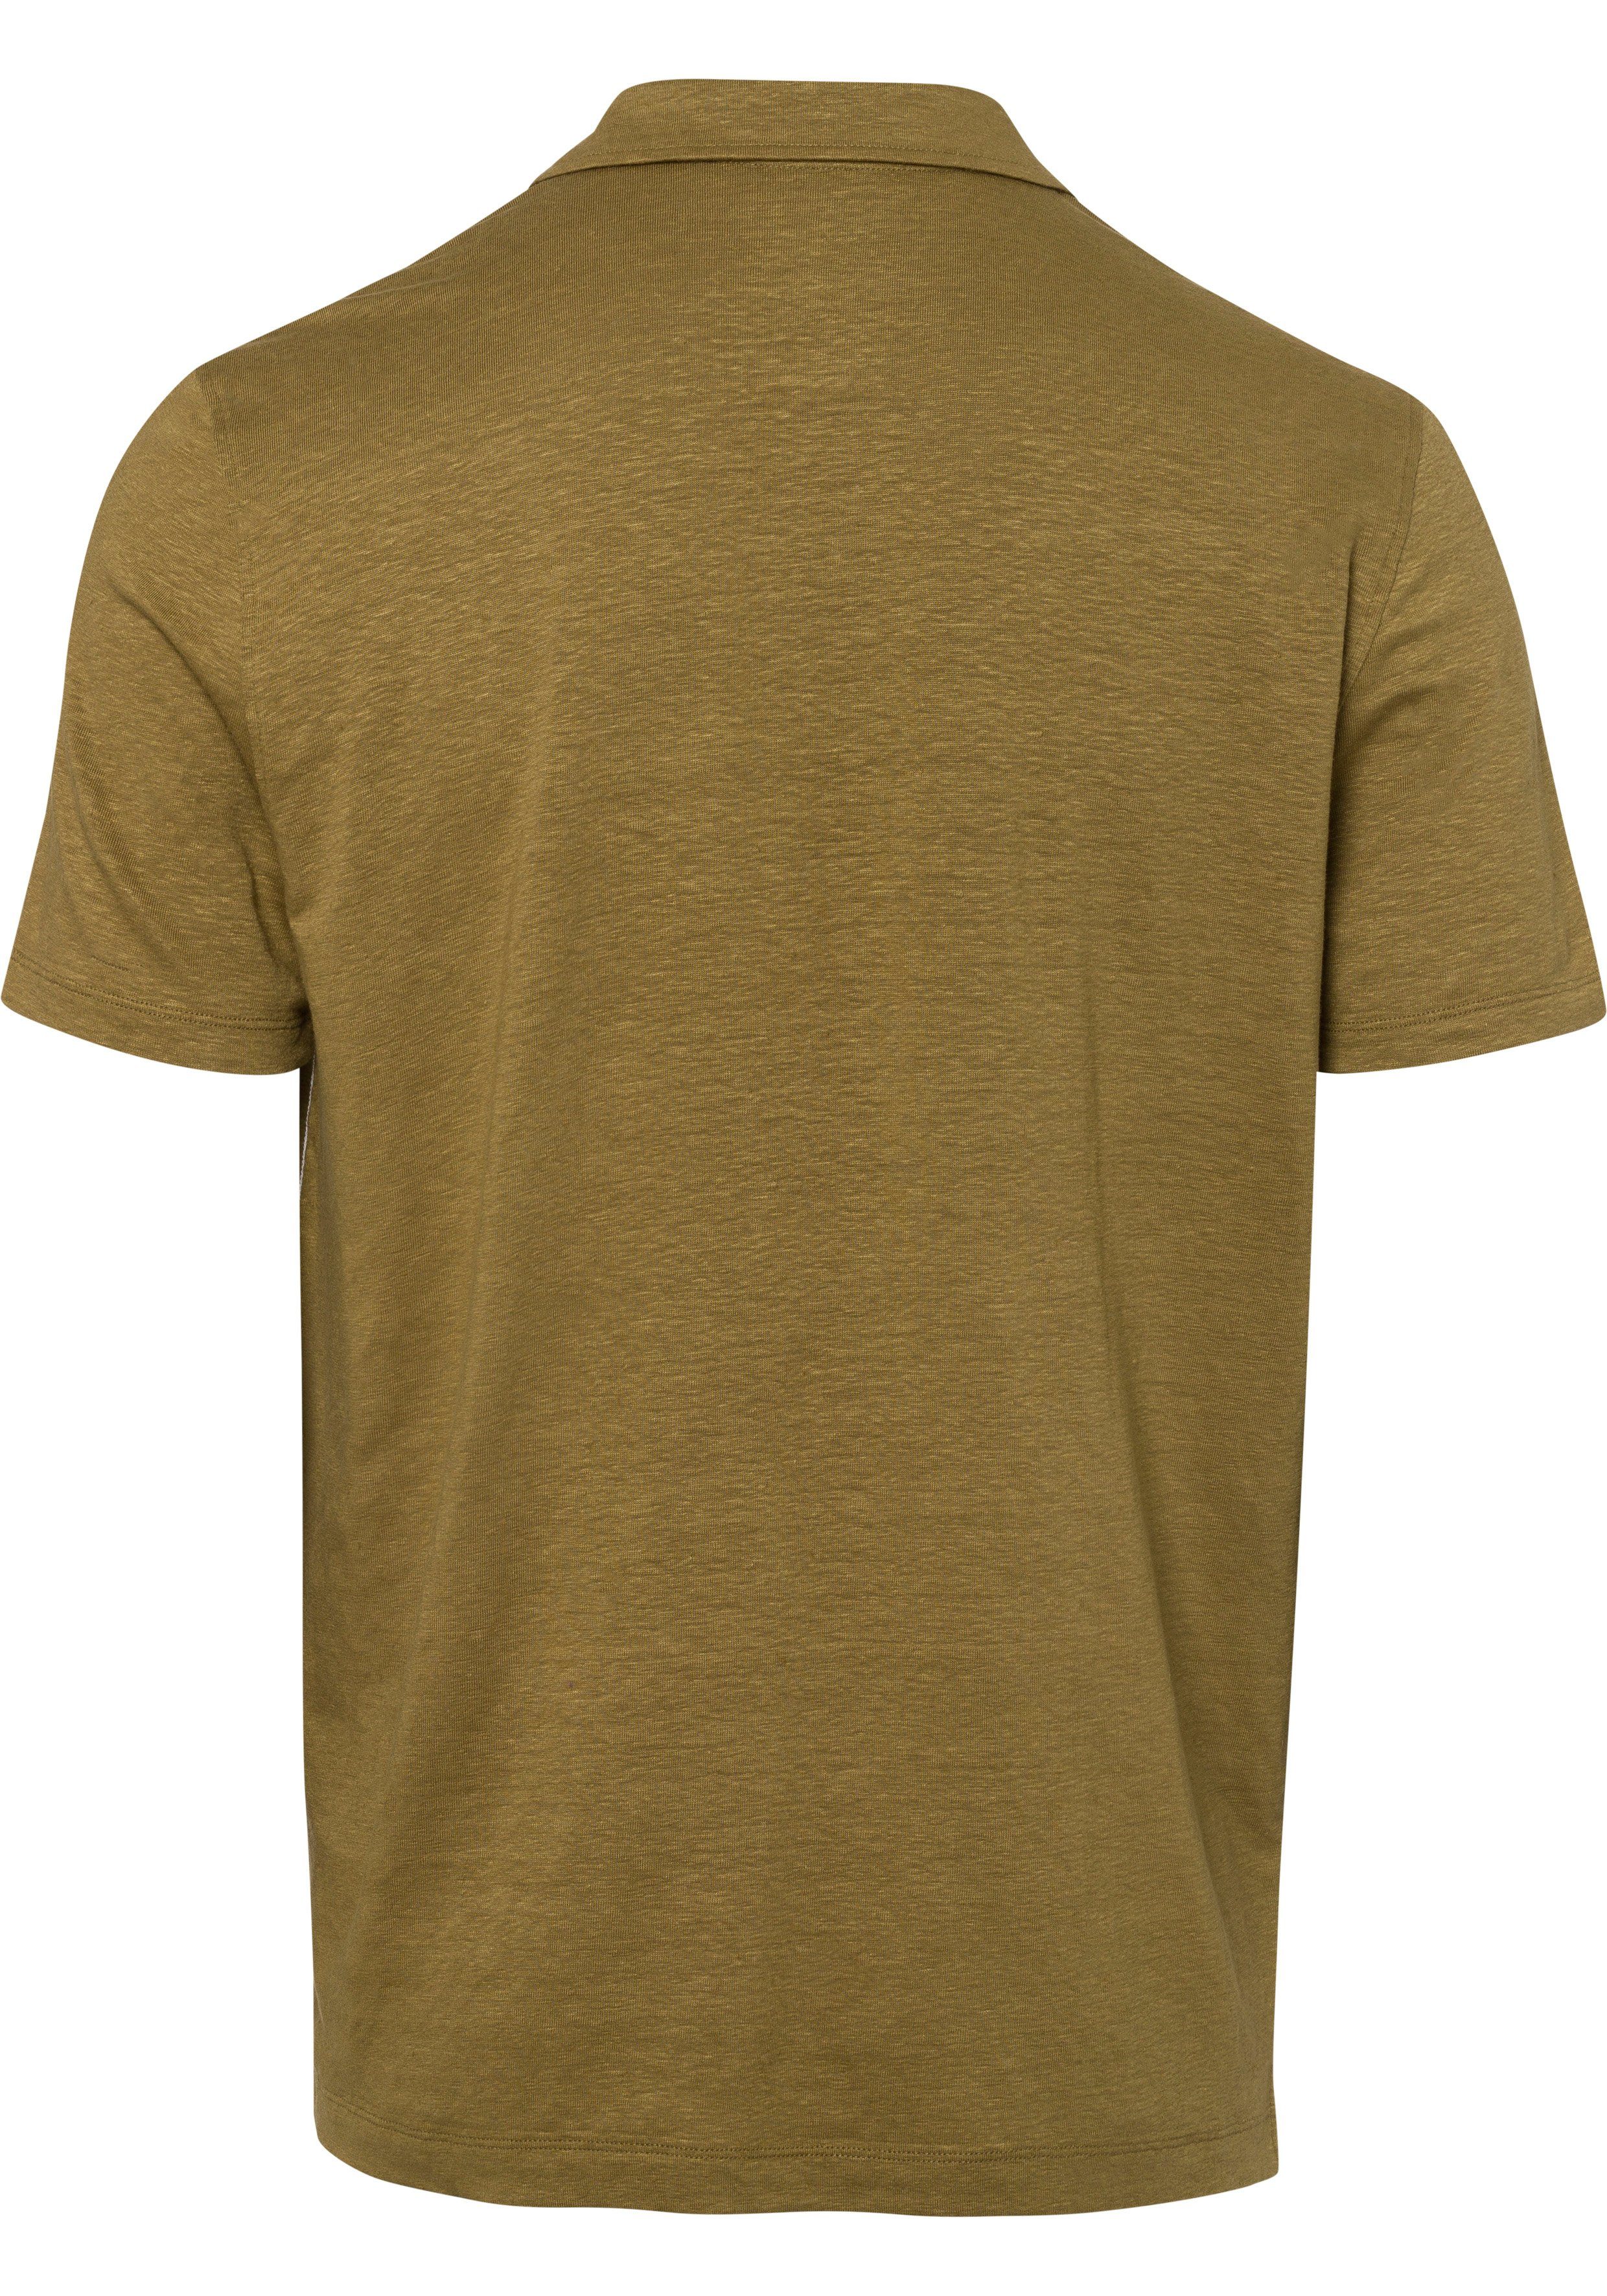 Hemden-Look Leinen Poloshirt sommerlicher nougat Casual-Optik im in OLYMP mit